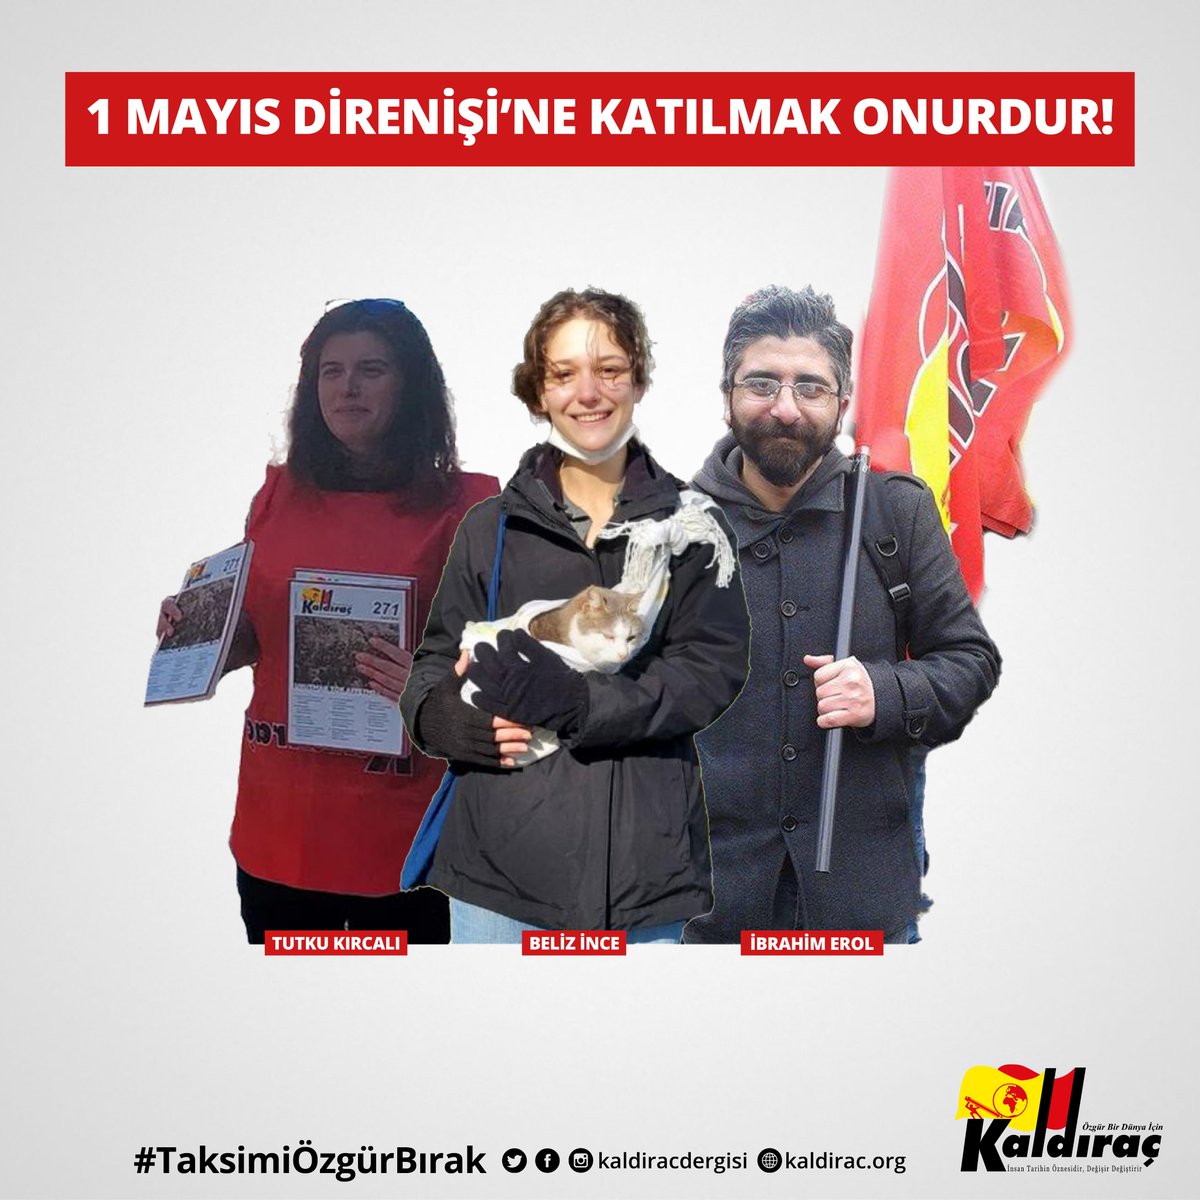 1 Mayıs günü binlerce kişiyle beraber Taksim'e yürüyen 38 devrimci tutuklandı. Ortaklarımız Tutku Kırcalı, Beliz İnce ve İbrahim Erol da dün gece tutuklanarak bugün Silivri Hapishanesi'ne gönderildiler. Ortaklarımızı alacağız! Her gün 1 Mayıs her gün kavga!